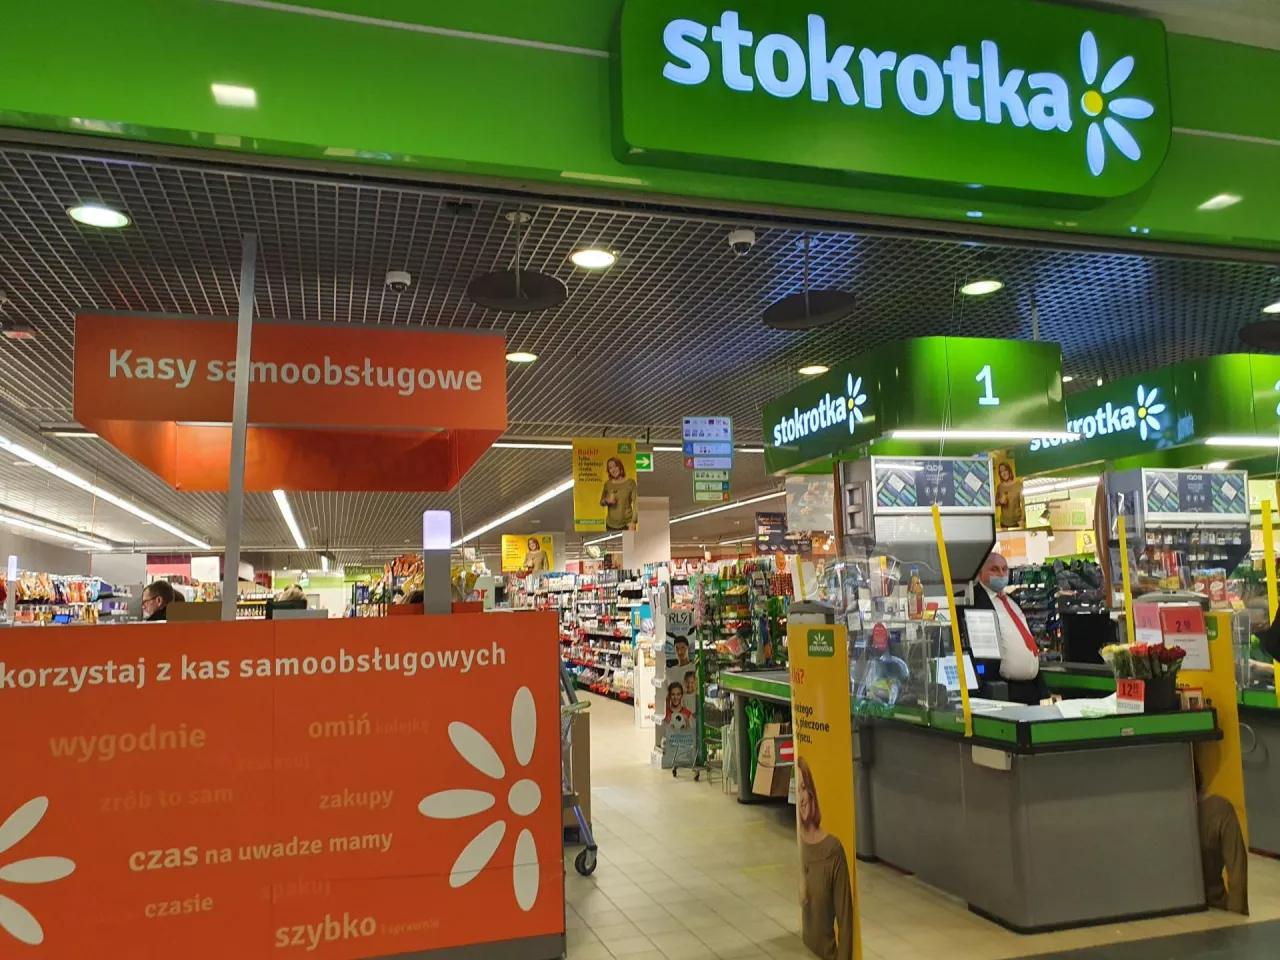 Właściciel sieci Stokrotka zobowiązał się do redukcji emisji gazów cieplarnianych (fot. wiadomoscihandlowe.pl)